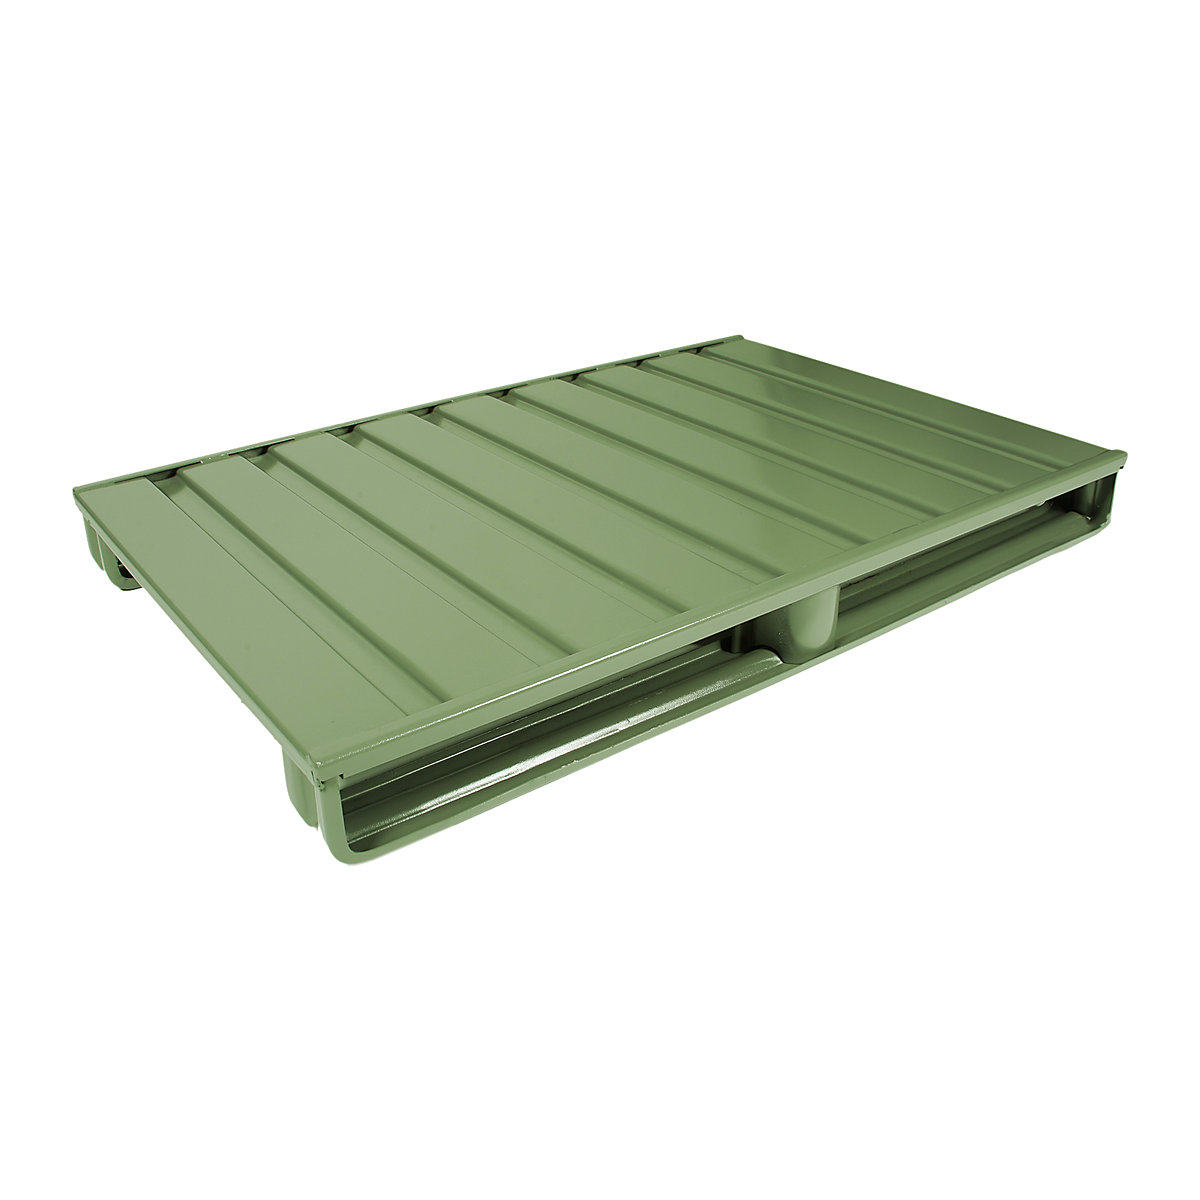 Čelična ravna paleta – Heson, DxŠ 1200 x 1000 mm, nosivost 2000 kg, u rezeda zelenoj boji, od 10 kom.-3